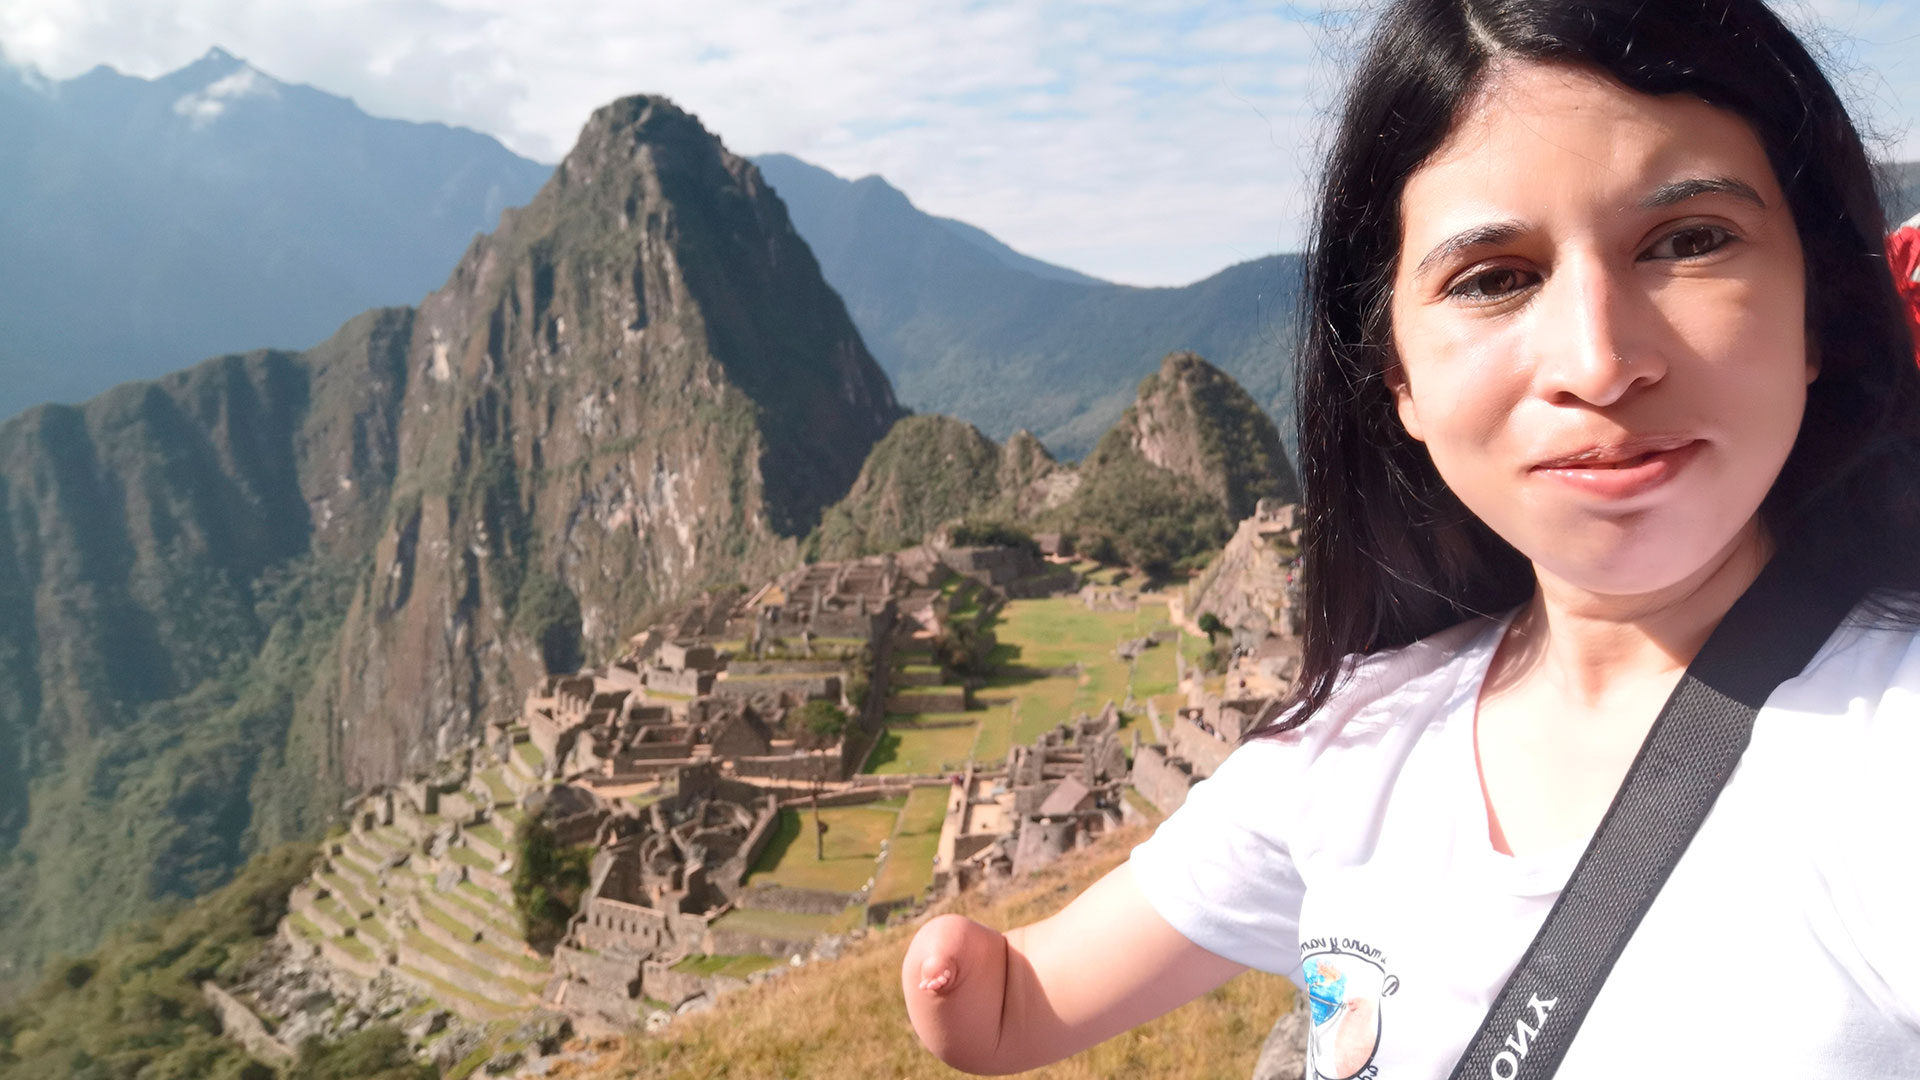 Florencia Luggren en un viaje a Macchu Pichu, Perú. “Yo no pienso en tener las dos manos. Pienso en viajar por el mundo, en hacer otras cosas, y esas cosas no tienen que ver con mi mano”, cuenta